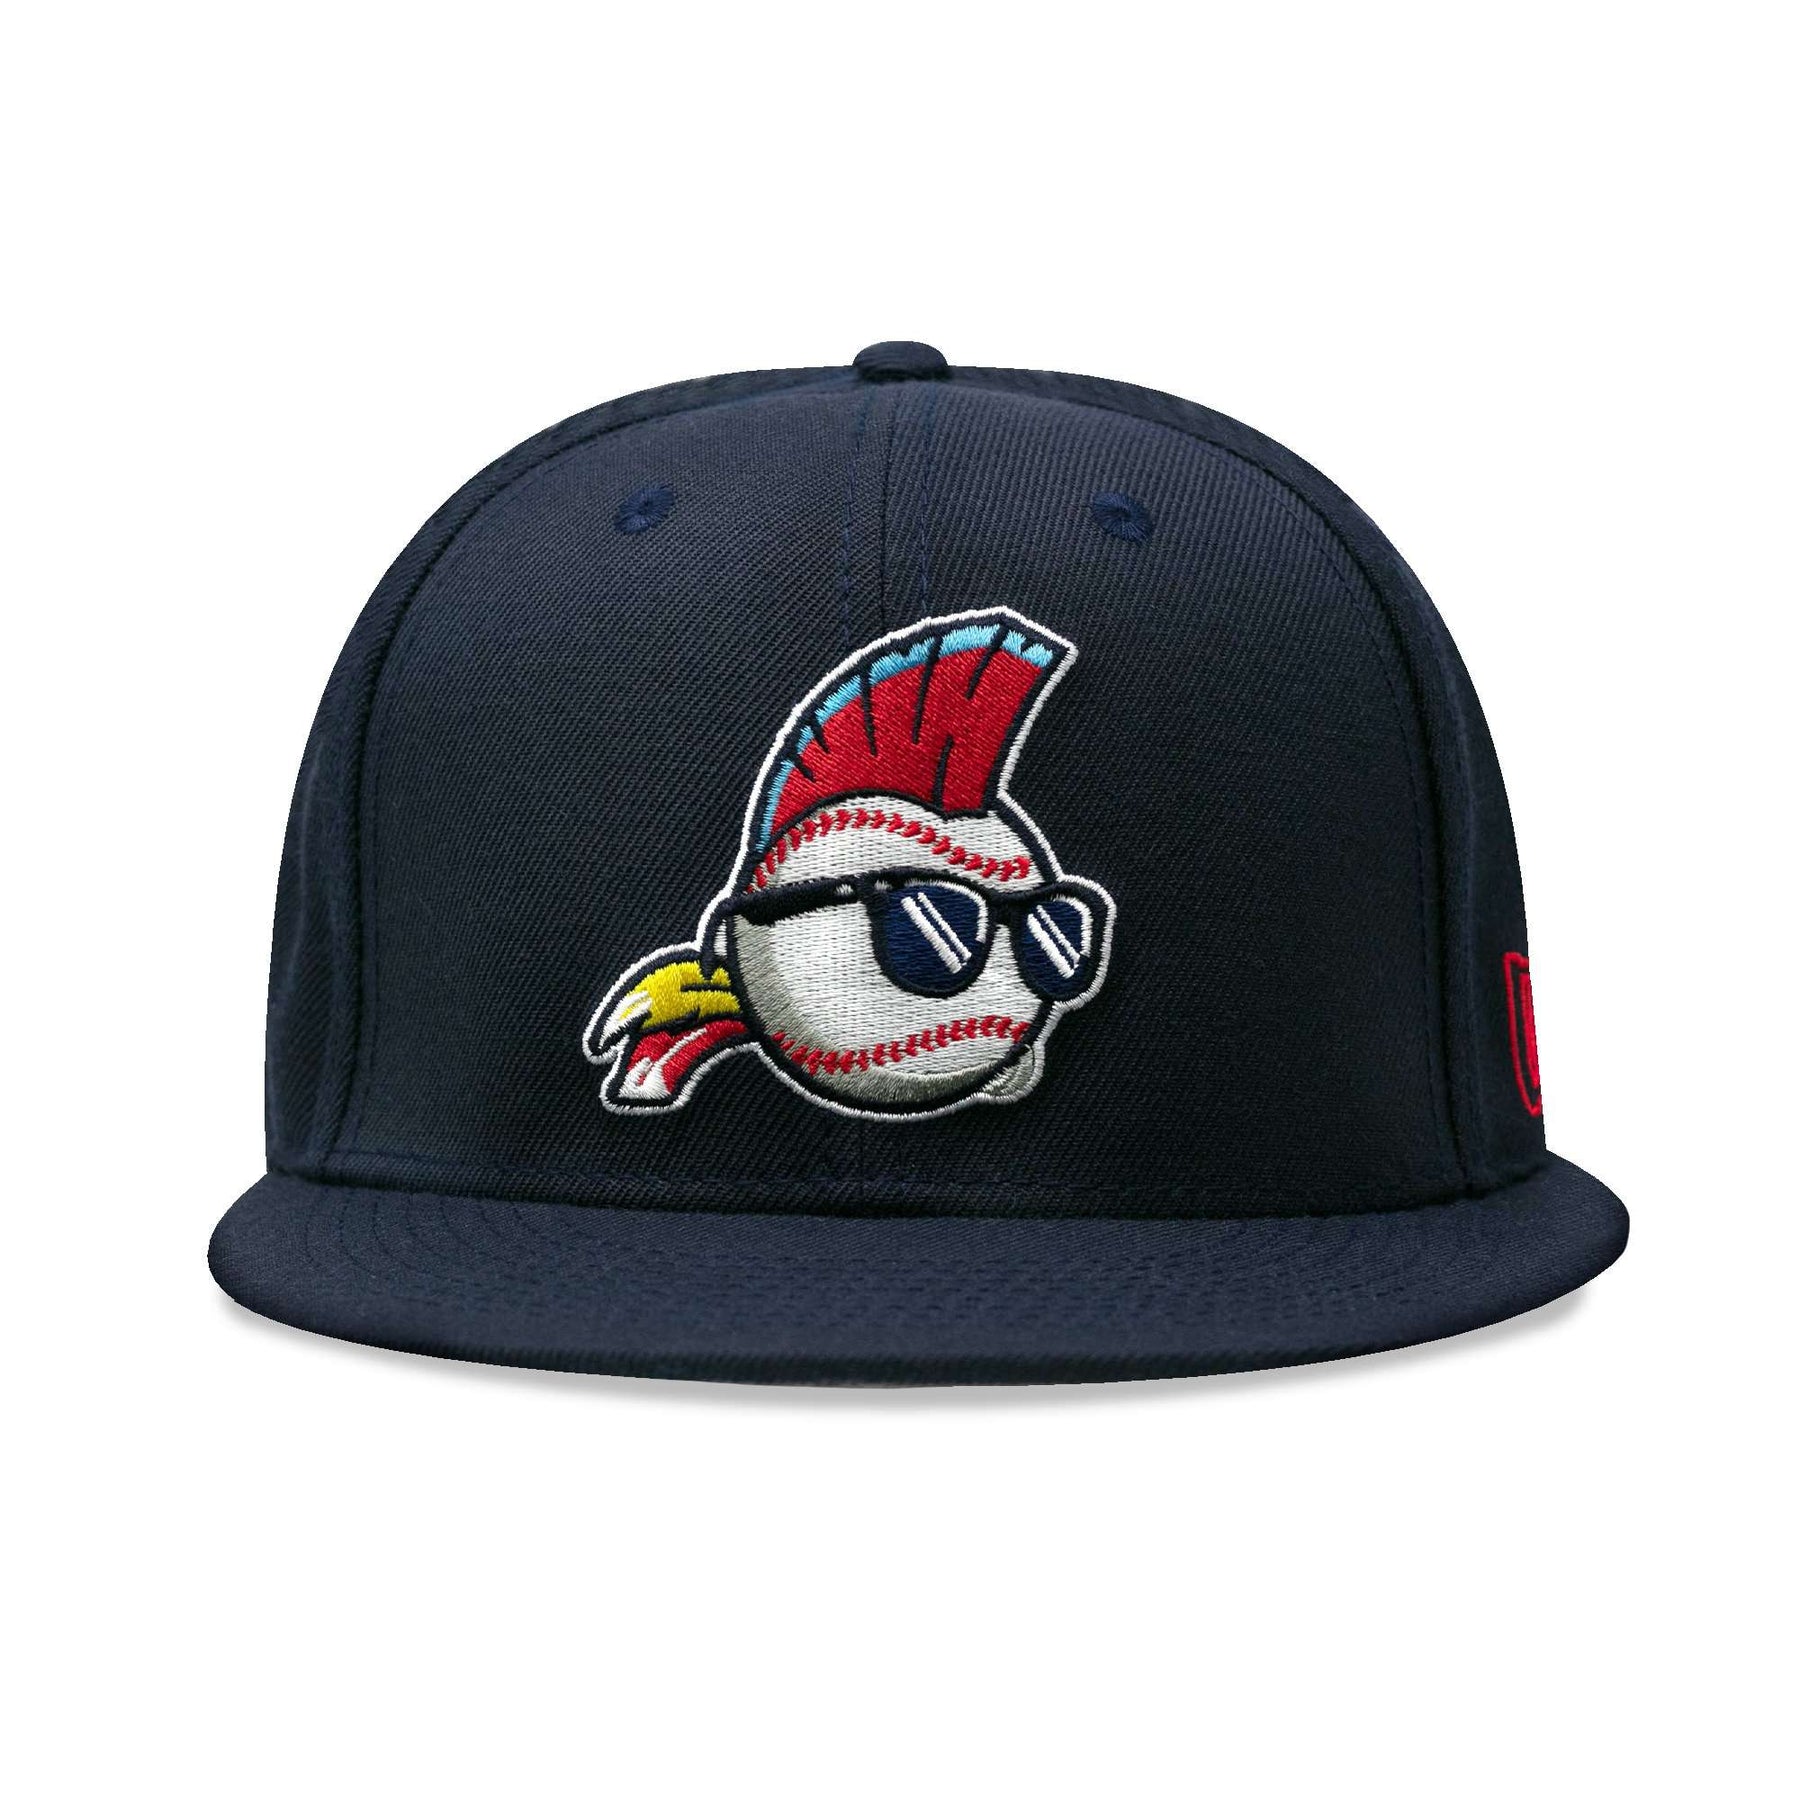 major league baseball cap price